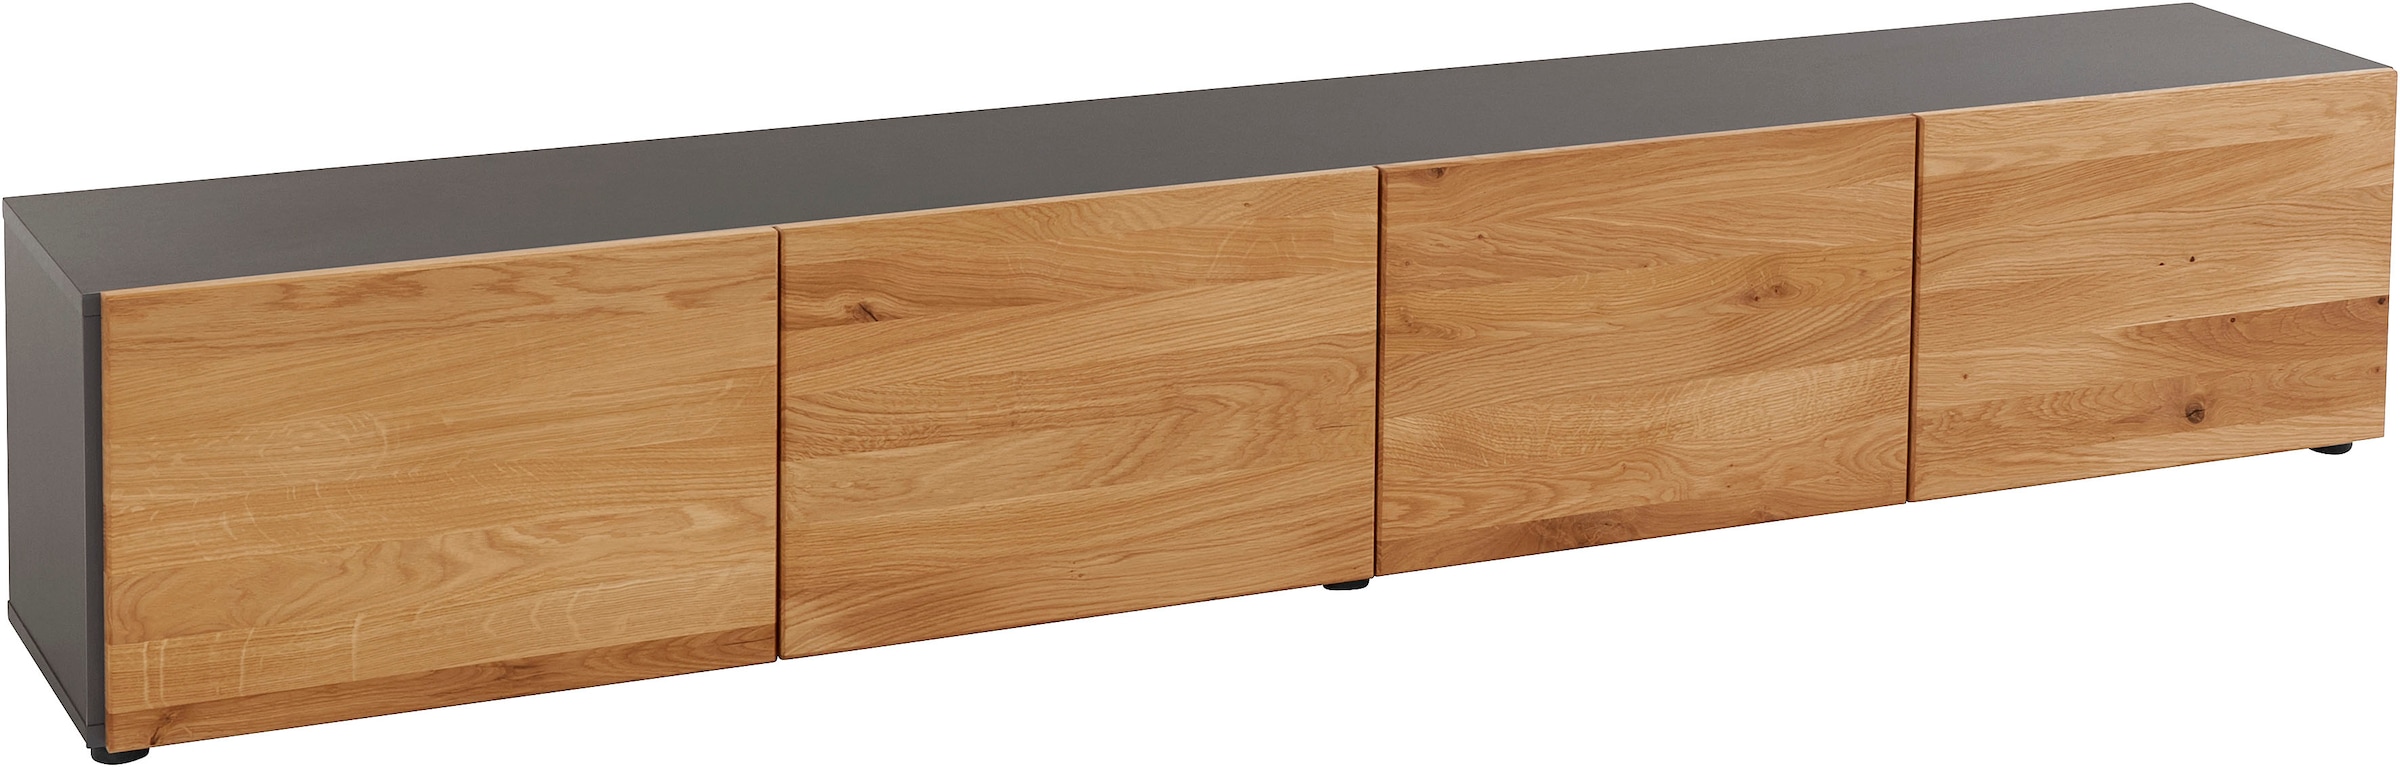 VOGL Möbelfabrik Lowboard »1237«, Massivholzfront, hängend oder stehend,  Breite ca. 184 cm online kaufen